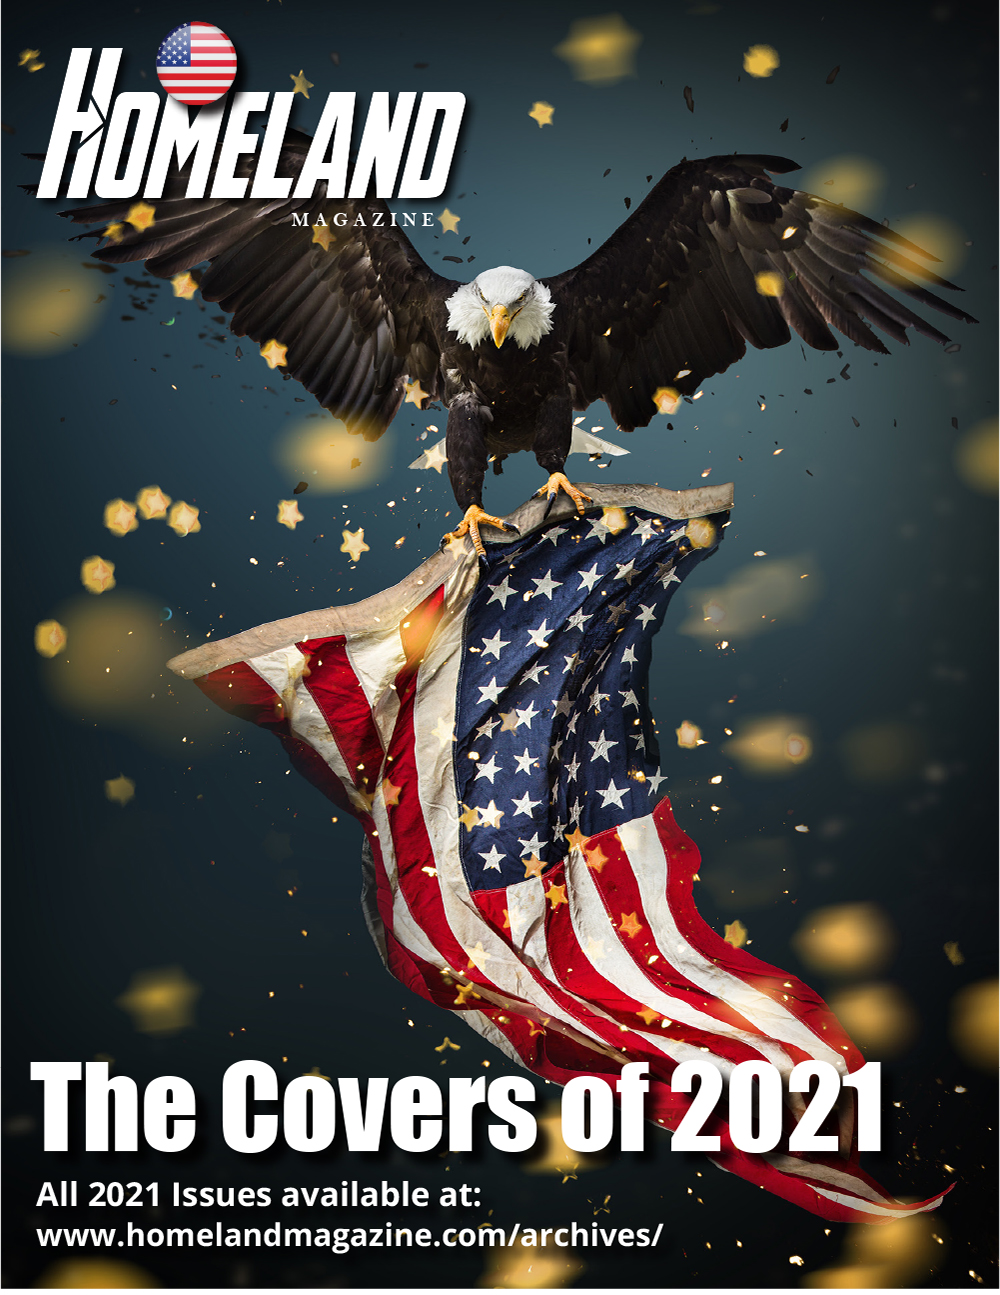 https://homelandmagazine.com/wp-content/uploads/2021/12/Homeland-Covers-2021-1.jpg